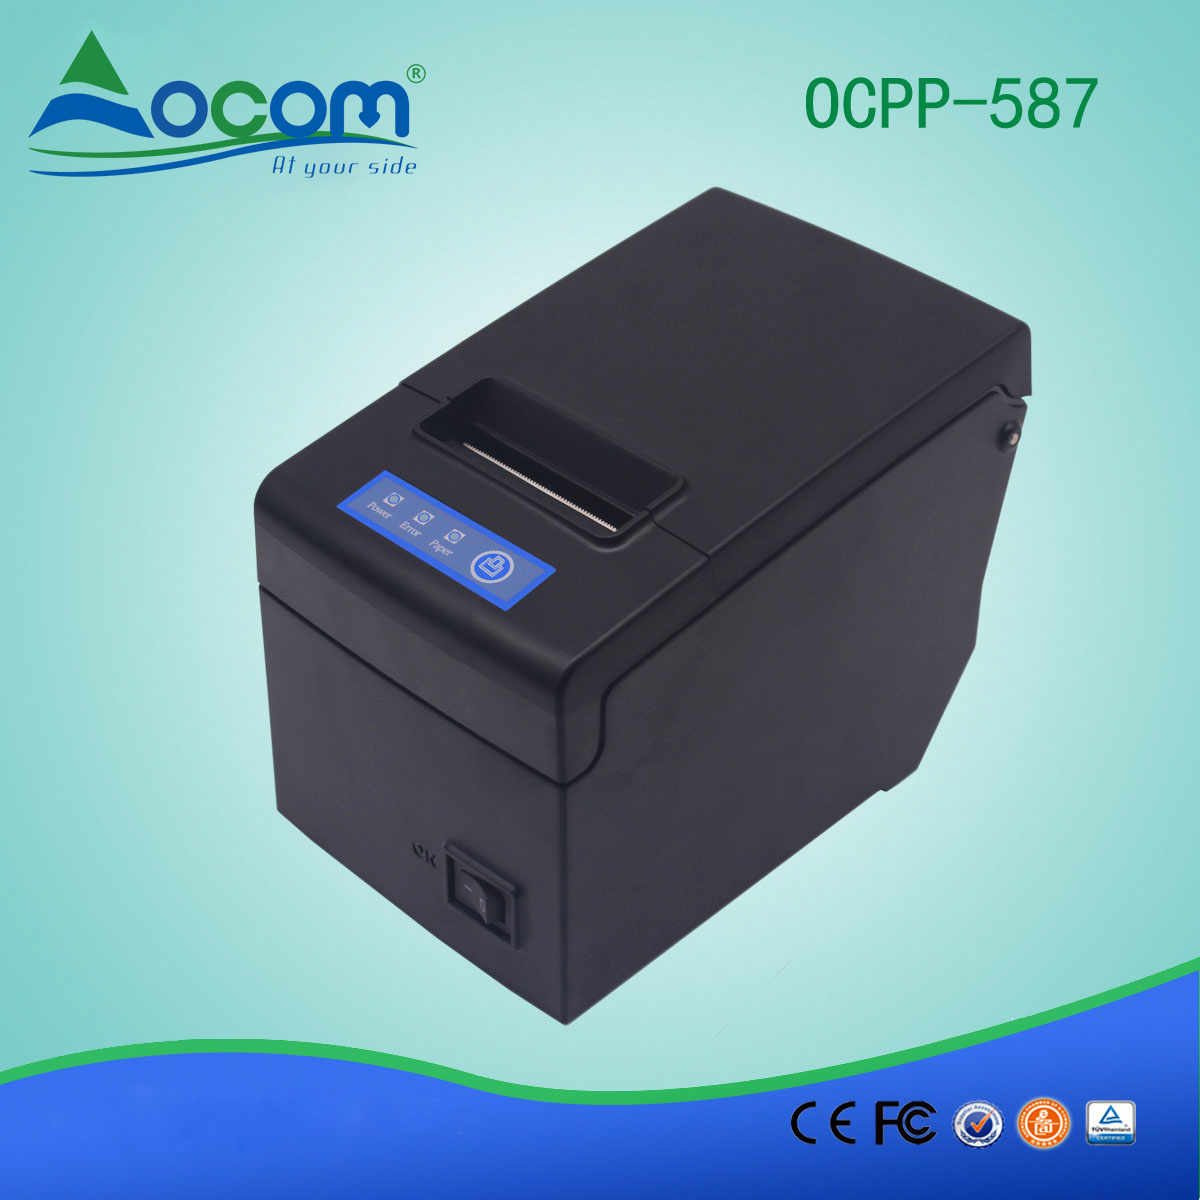 Impressora de recibos térmicos de 58mm com suporte de papel grande OCPP-587-UW USB + WIFI Communication